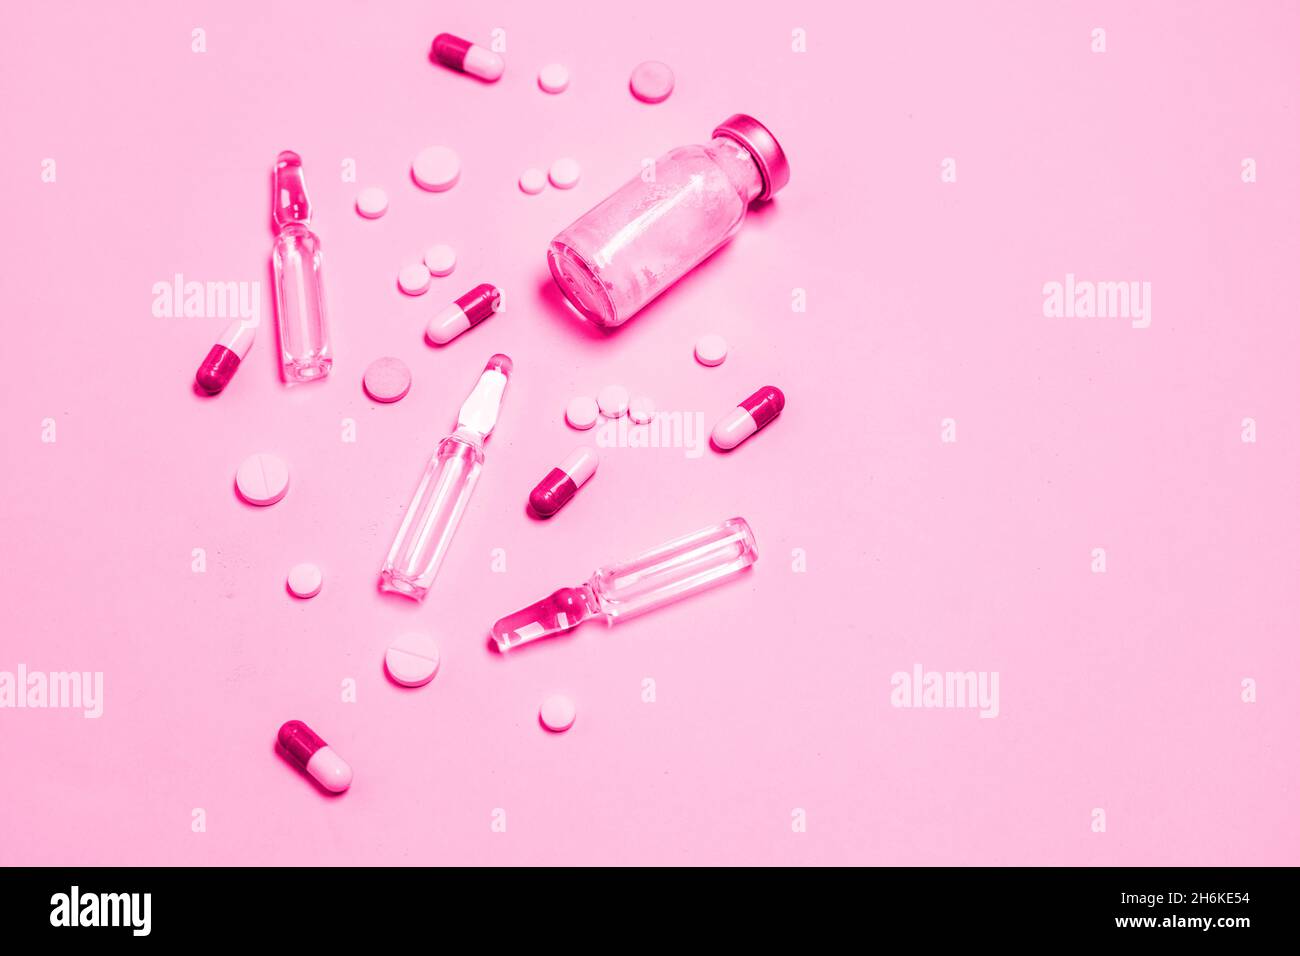 Impfstoff und Spritze, verschiedene pharmazeutische Pillen, Tabletten und Kapseln auf blauem Hintergrund. Gesundheitswesen und medizinisches Konzept. Stockfoto